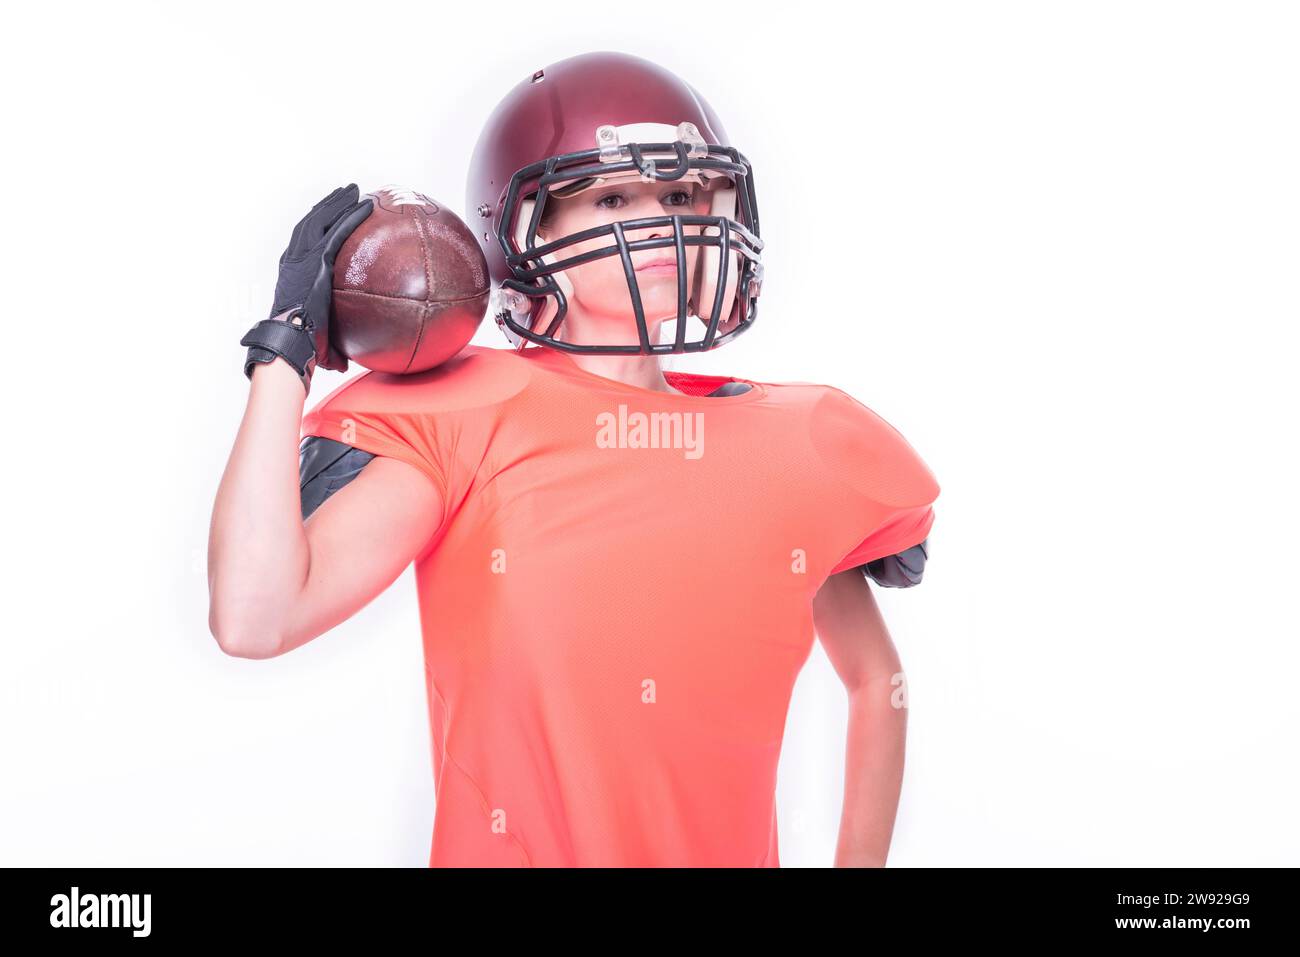 Frau in der Uniform eines American Football-Mannschaftsspielers, der mit einem Ball auf weißem Hintergrund posiert. Sportkonzept. Gemischte Medien Stockfoto